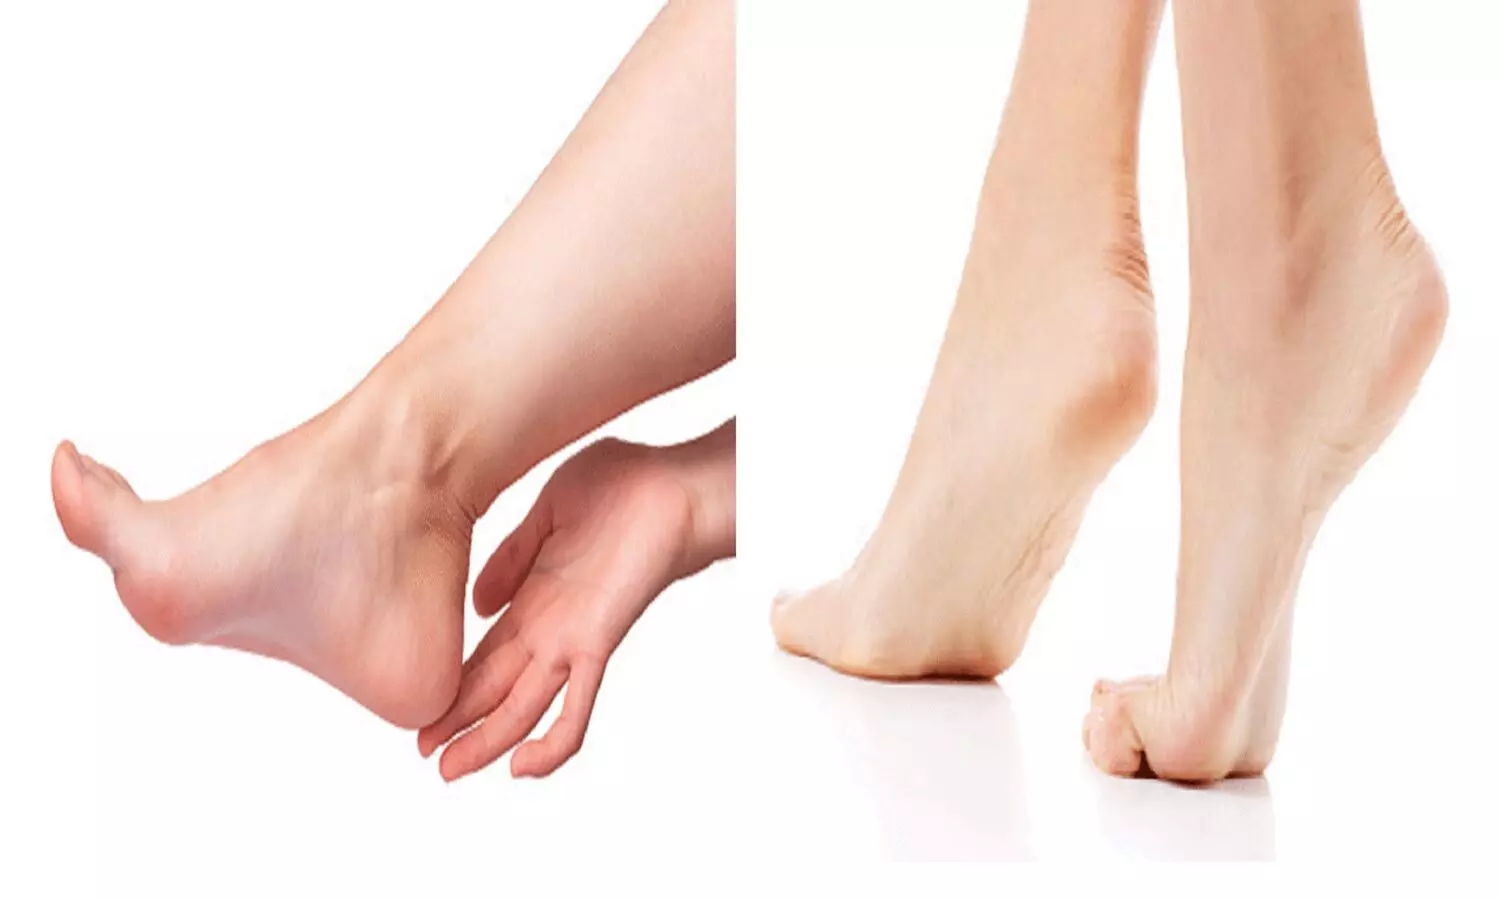 Lucky Women Feet: जिन महिलाओं के पैर की बनावट है ऐसी वो होती है माँ लक्ष्मी का रूप, जिस घर में होती है पति बन जाता है मालामाल